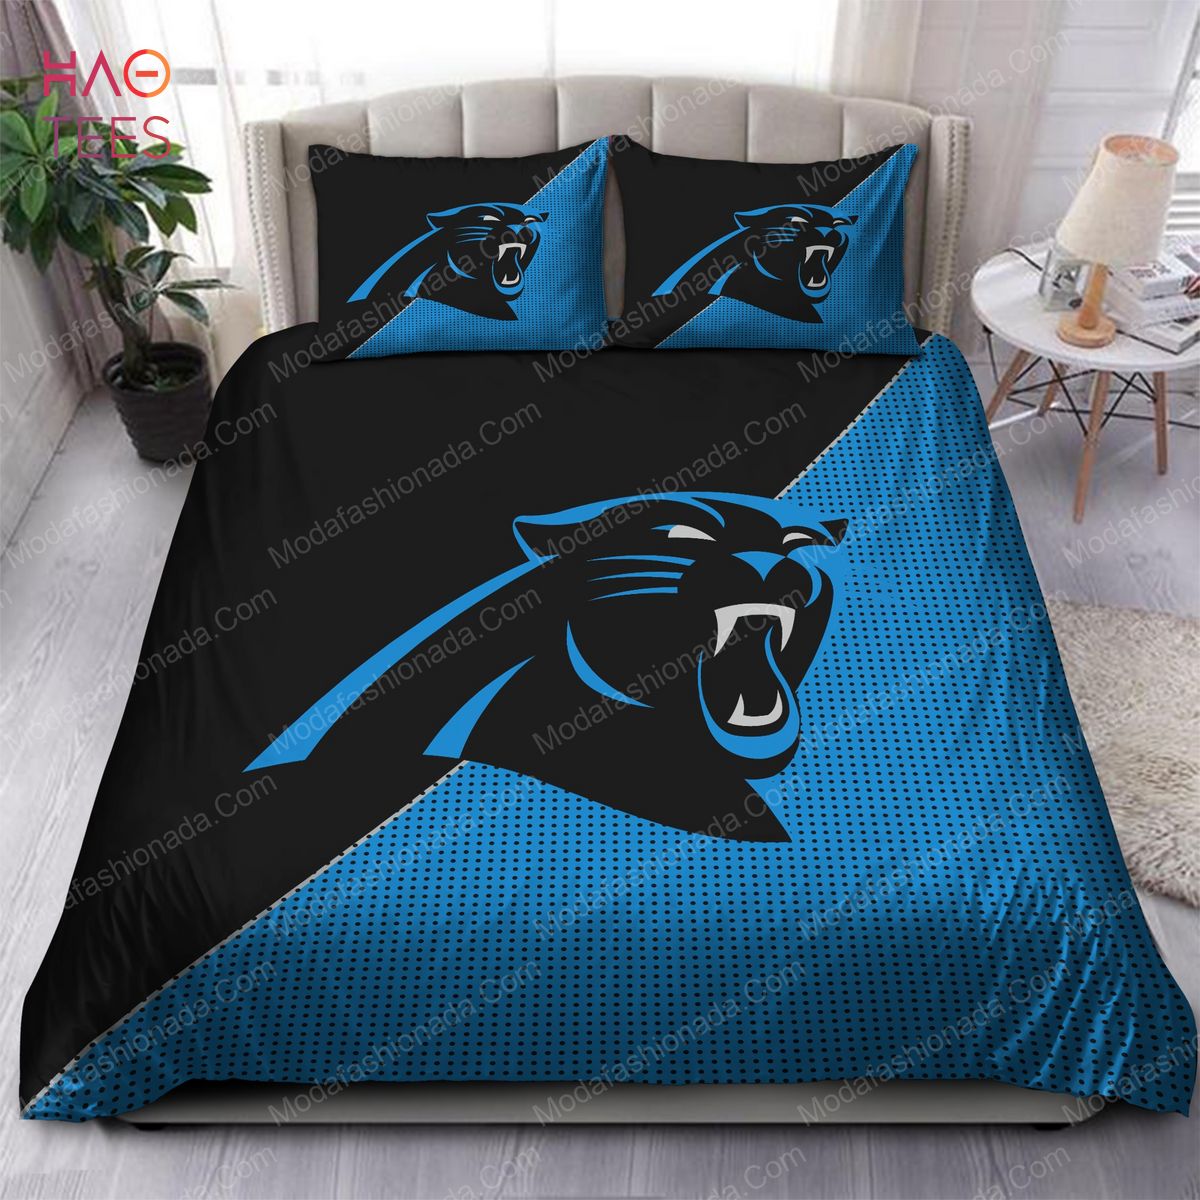 Carolina Panthers Logo Bedding Sets